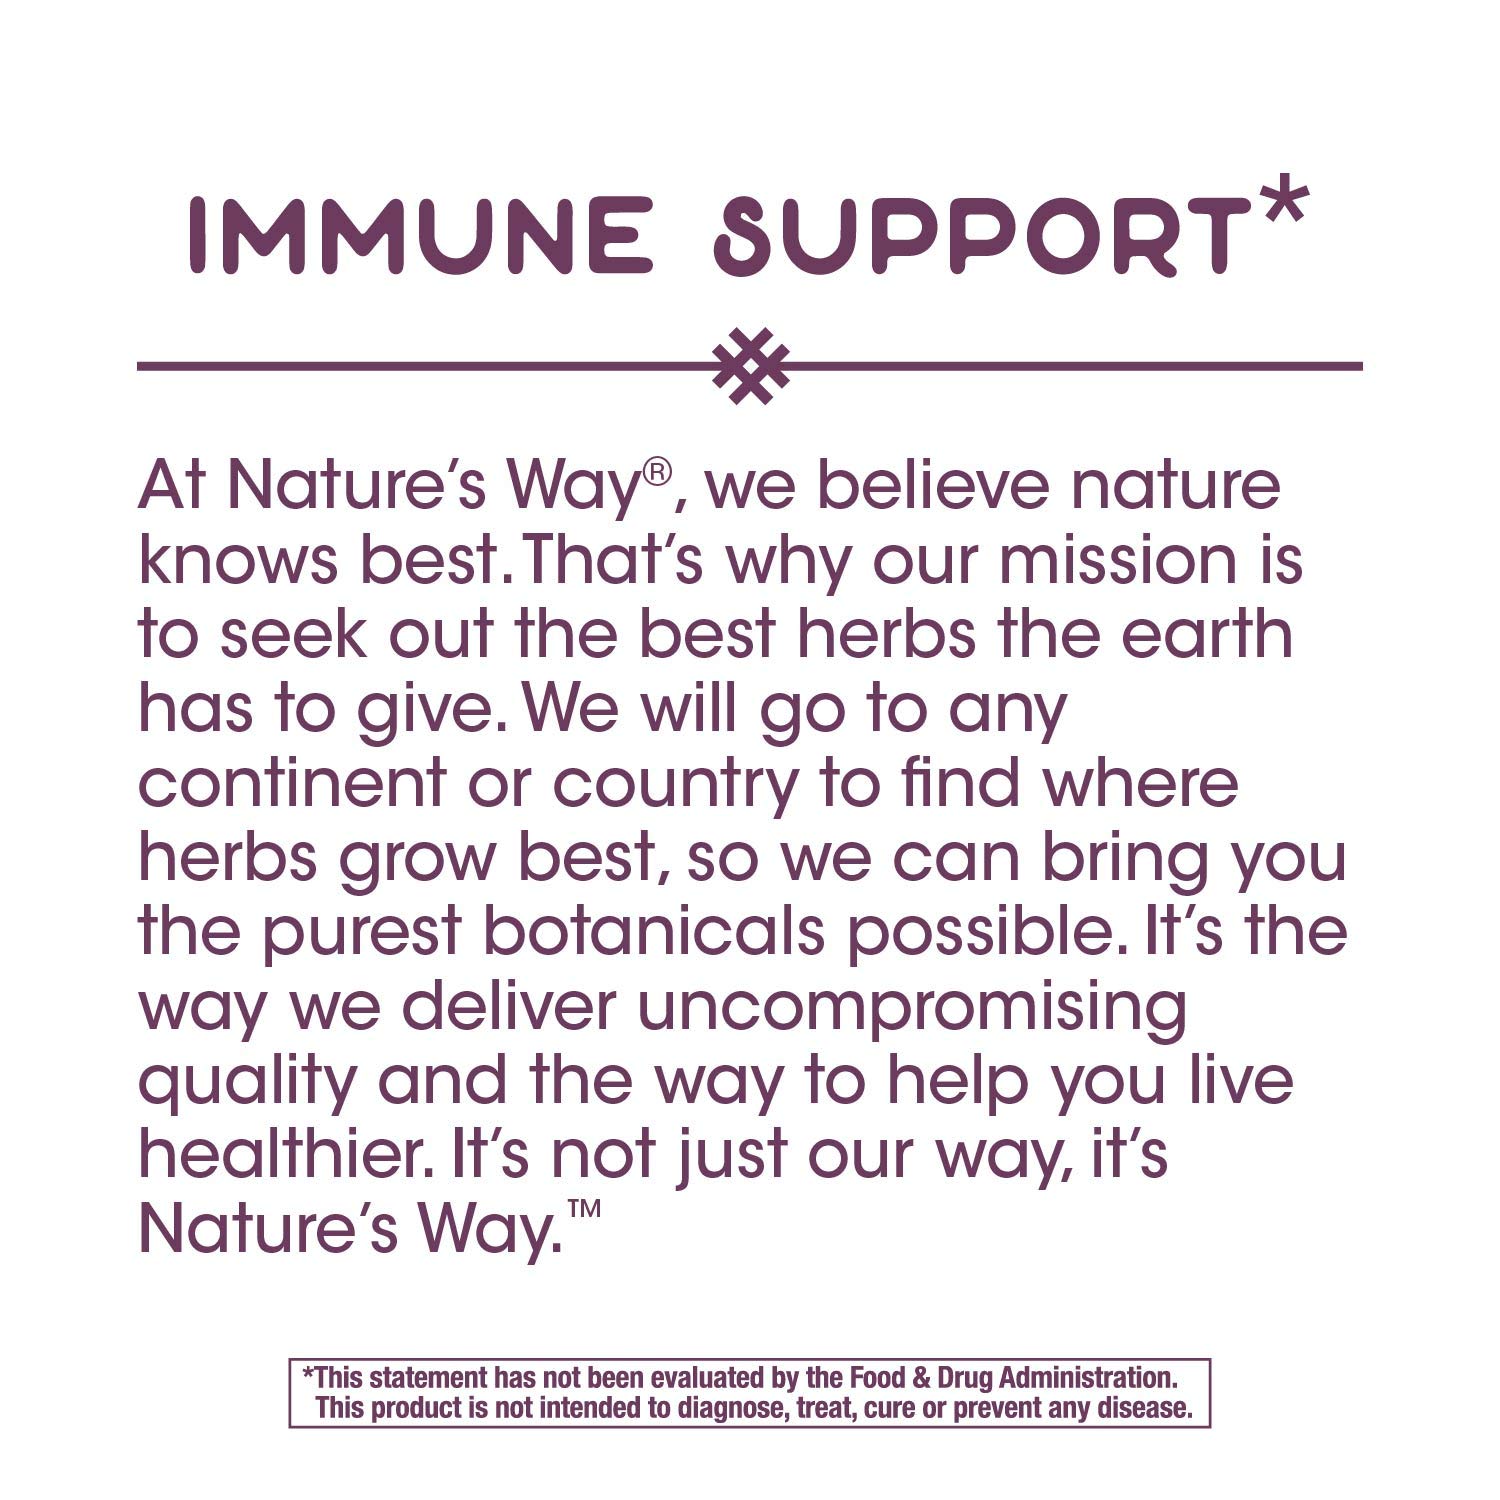 Nature's Way Oregano Oil Premium Blend, Immune Support*, Vegan, 60 Capsules